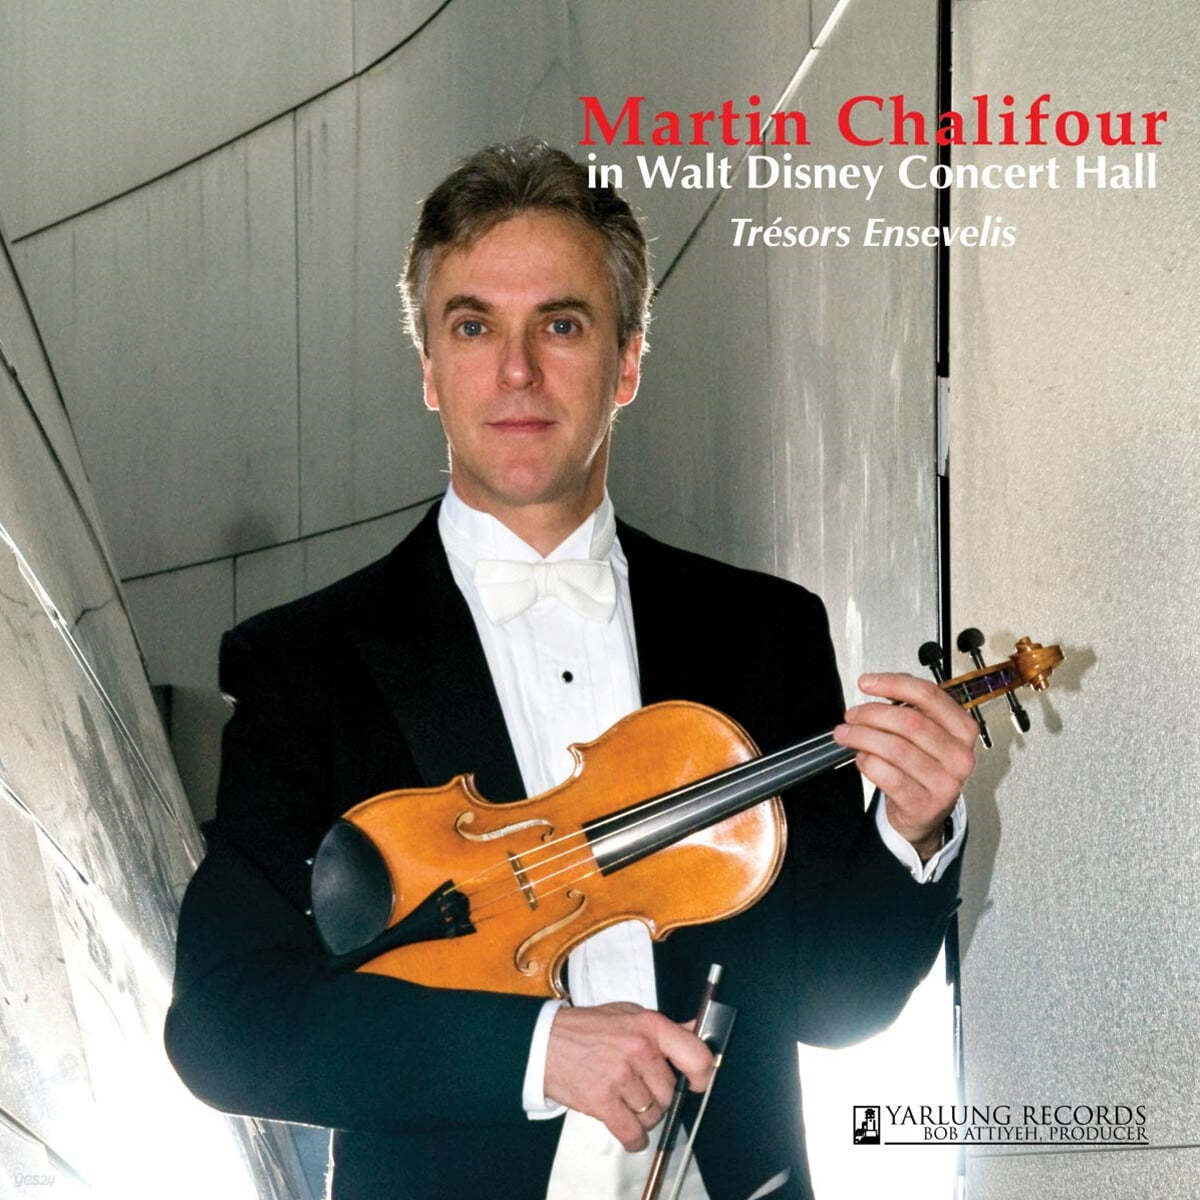 마틴 찰리퍼가 연주하는 바이올린 모음곡 - 숨겨진 보석 (Martin Chalifour Plays Violin: Tresors Ensevelis - Hidden Treasures) 